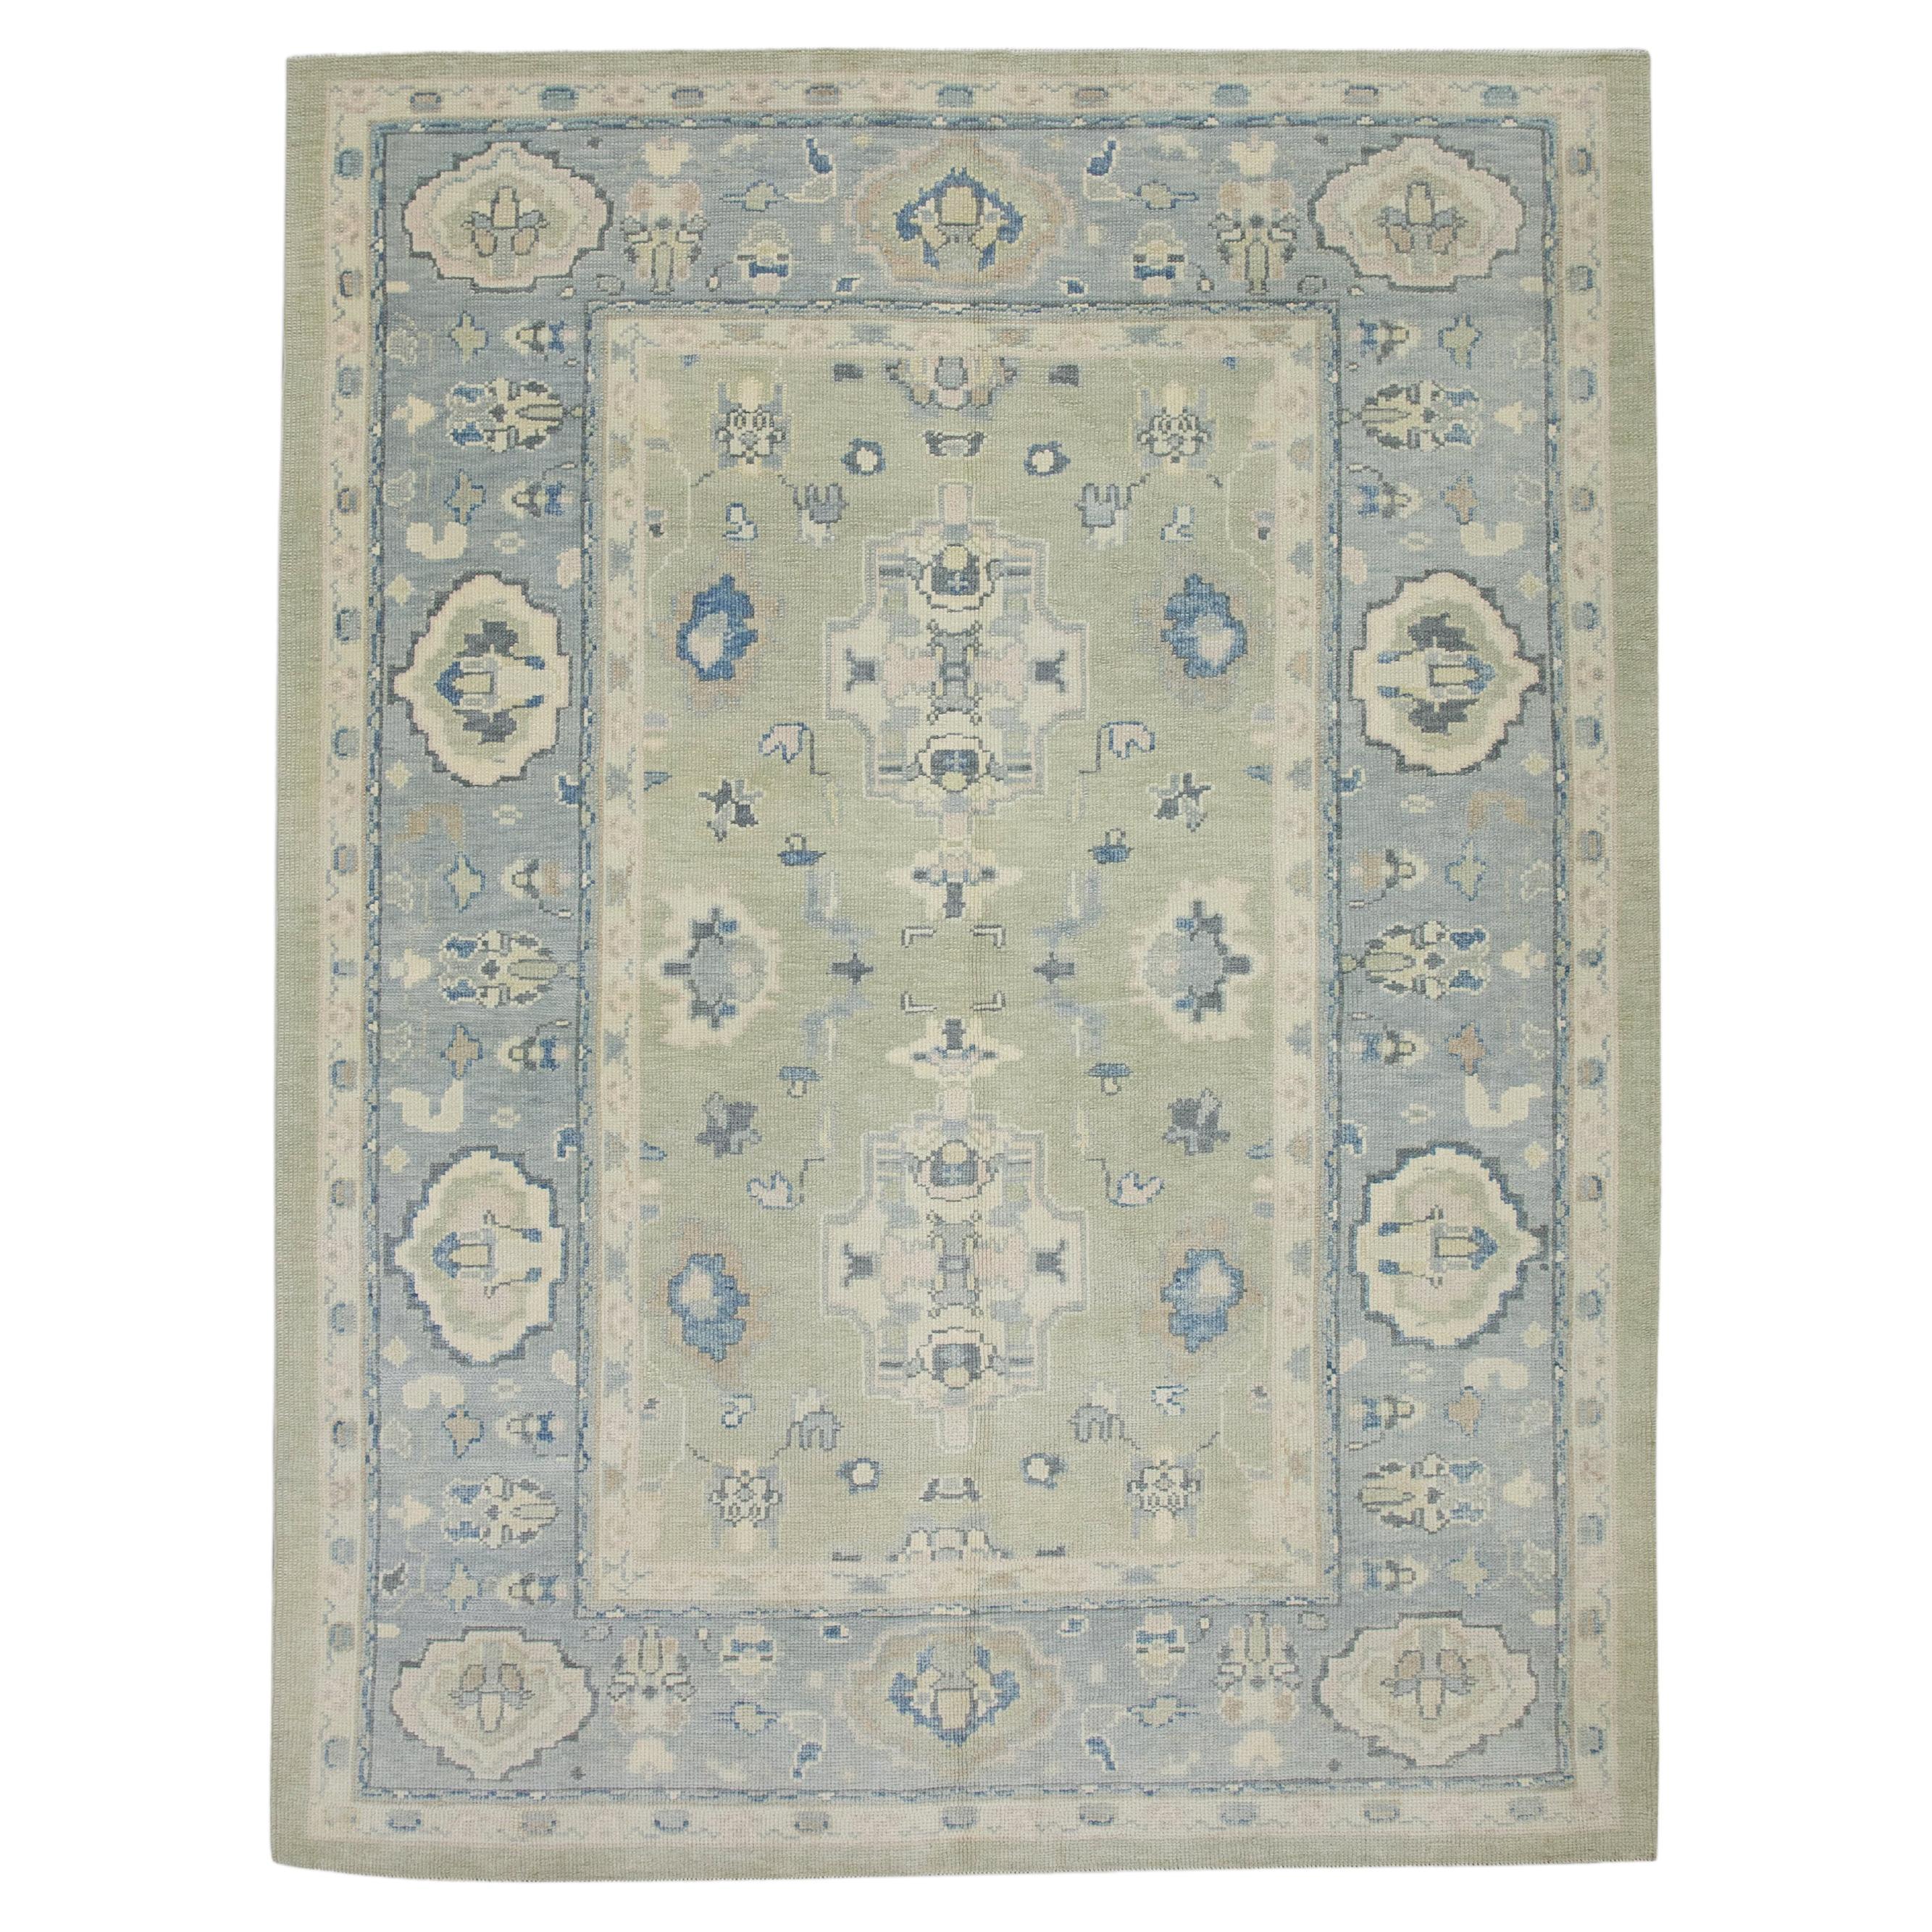 Handgewebter türkischer Oushak-Teppich aus Wolle in Grün & Blau mit Blumenmuster 6'2" x 8'2"